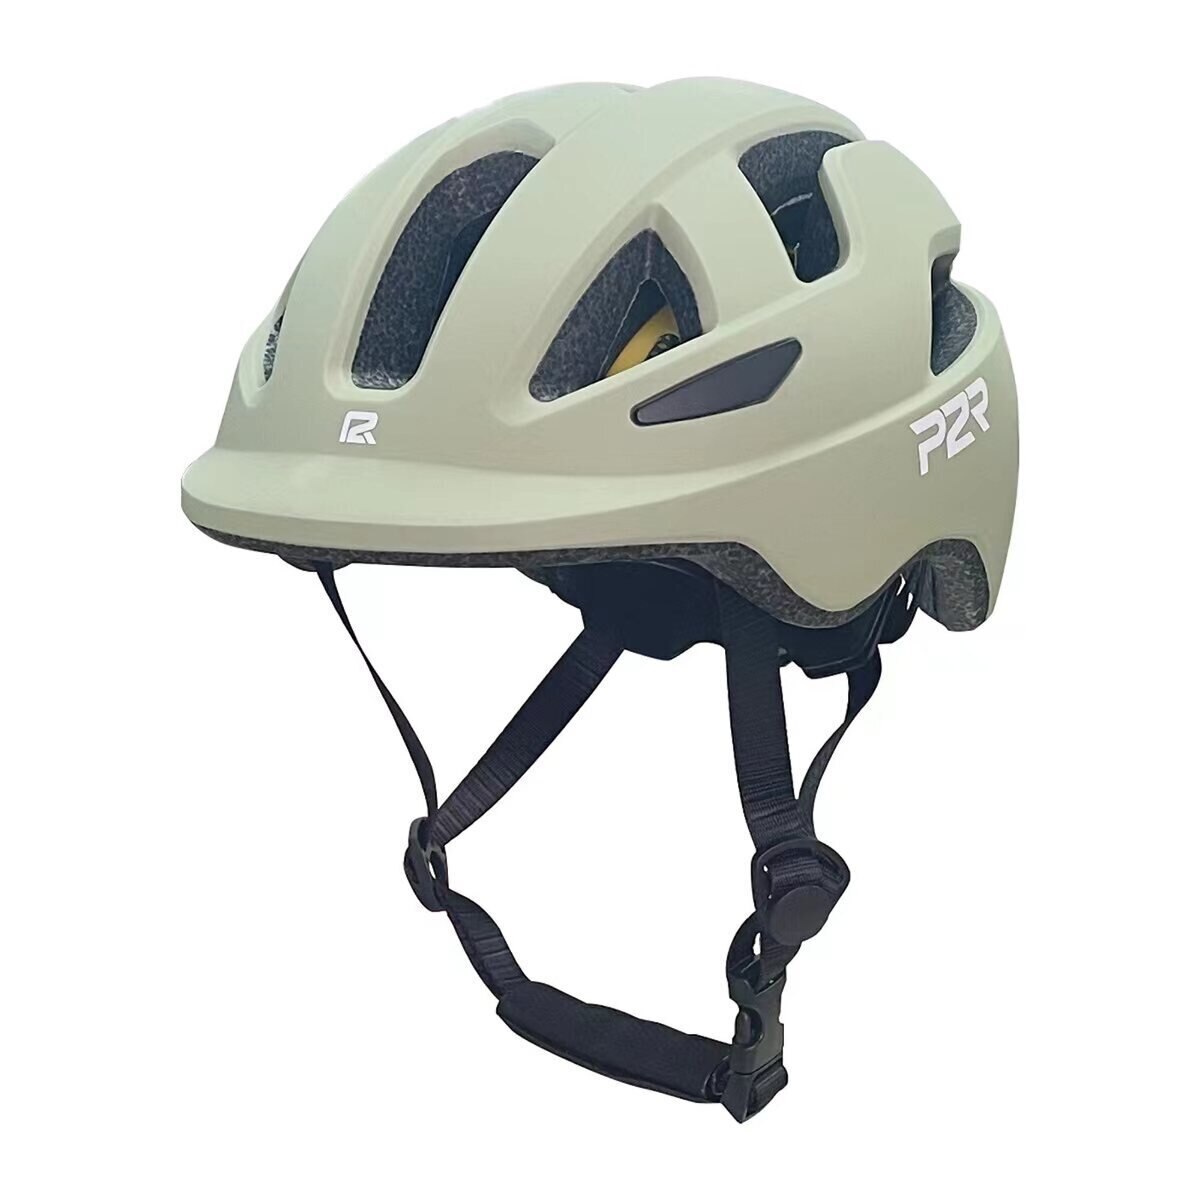 P2R MIPS搭載 自転車用インモールドヘルメット 子供用